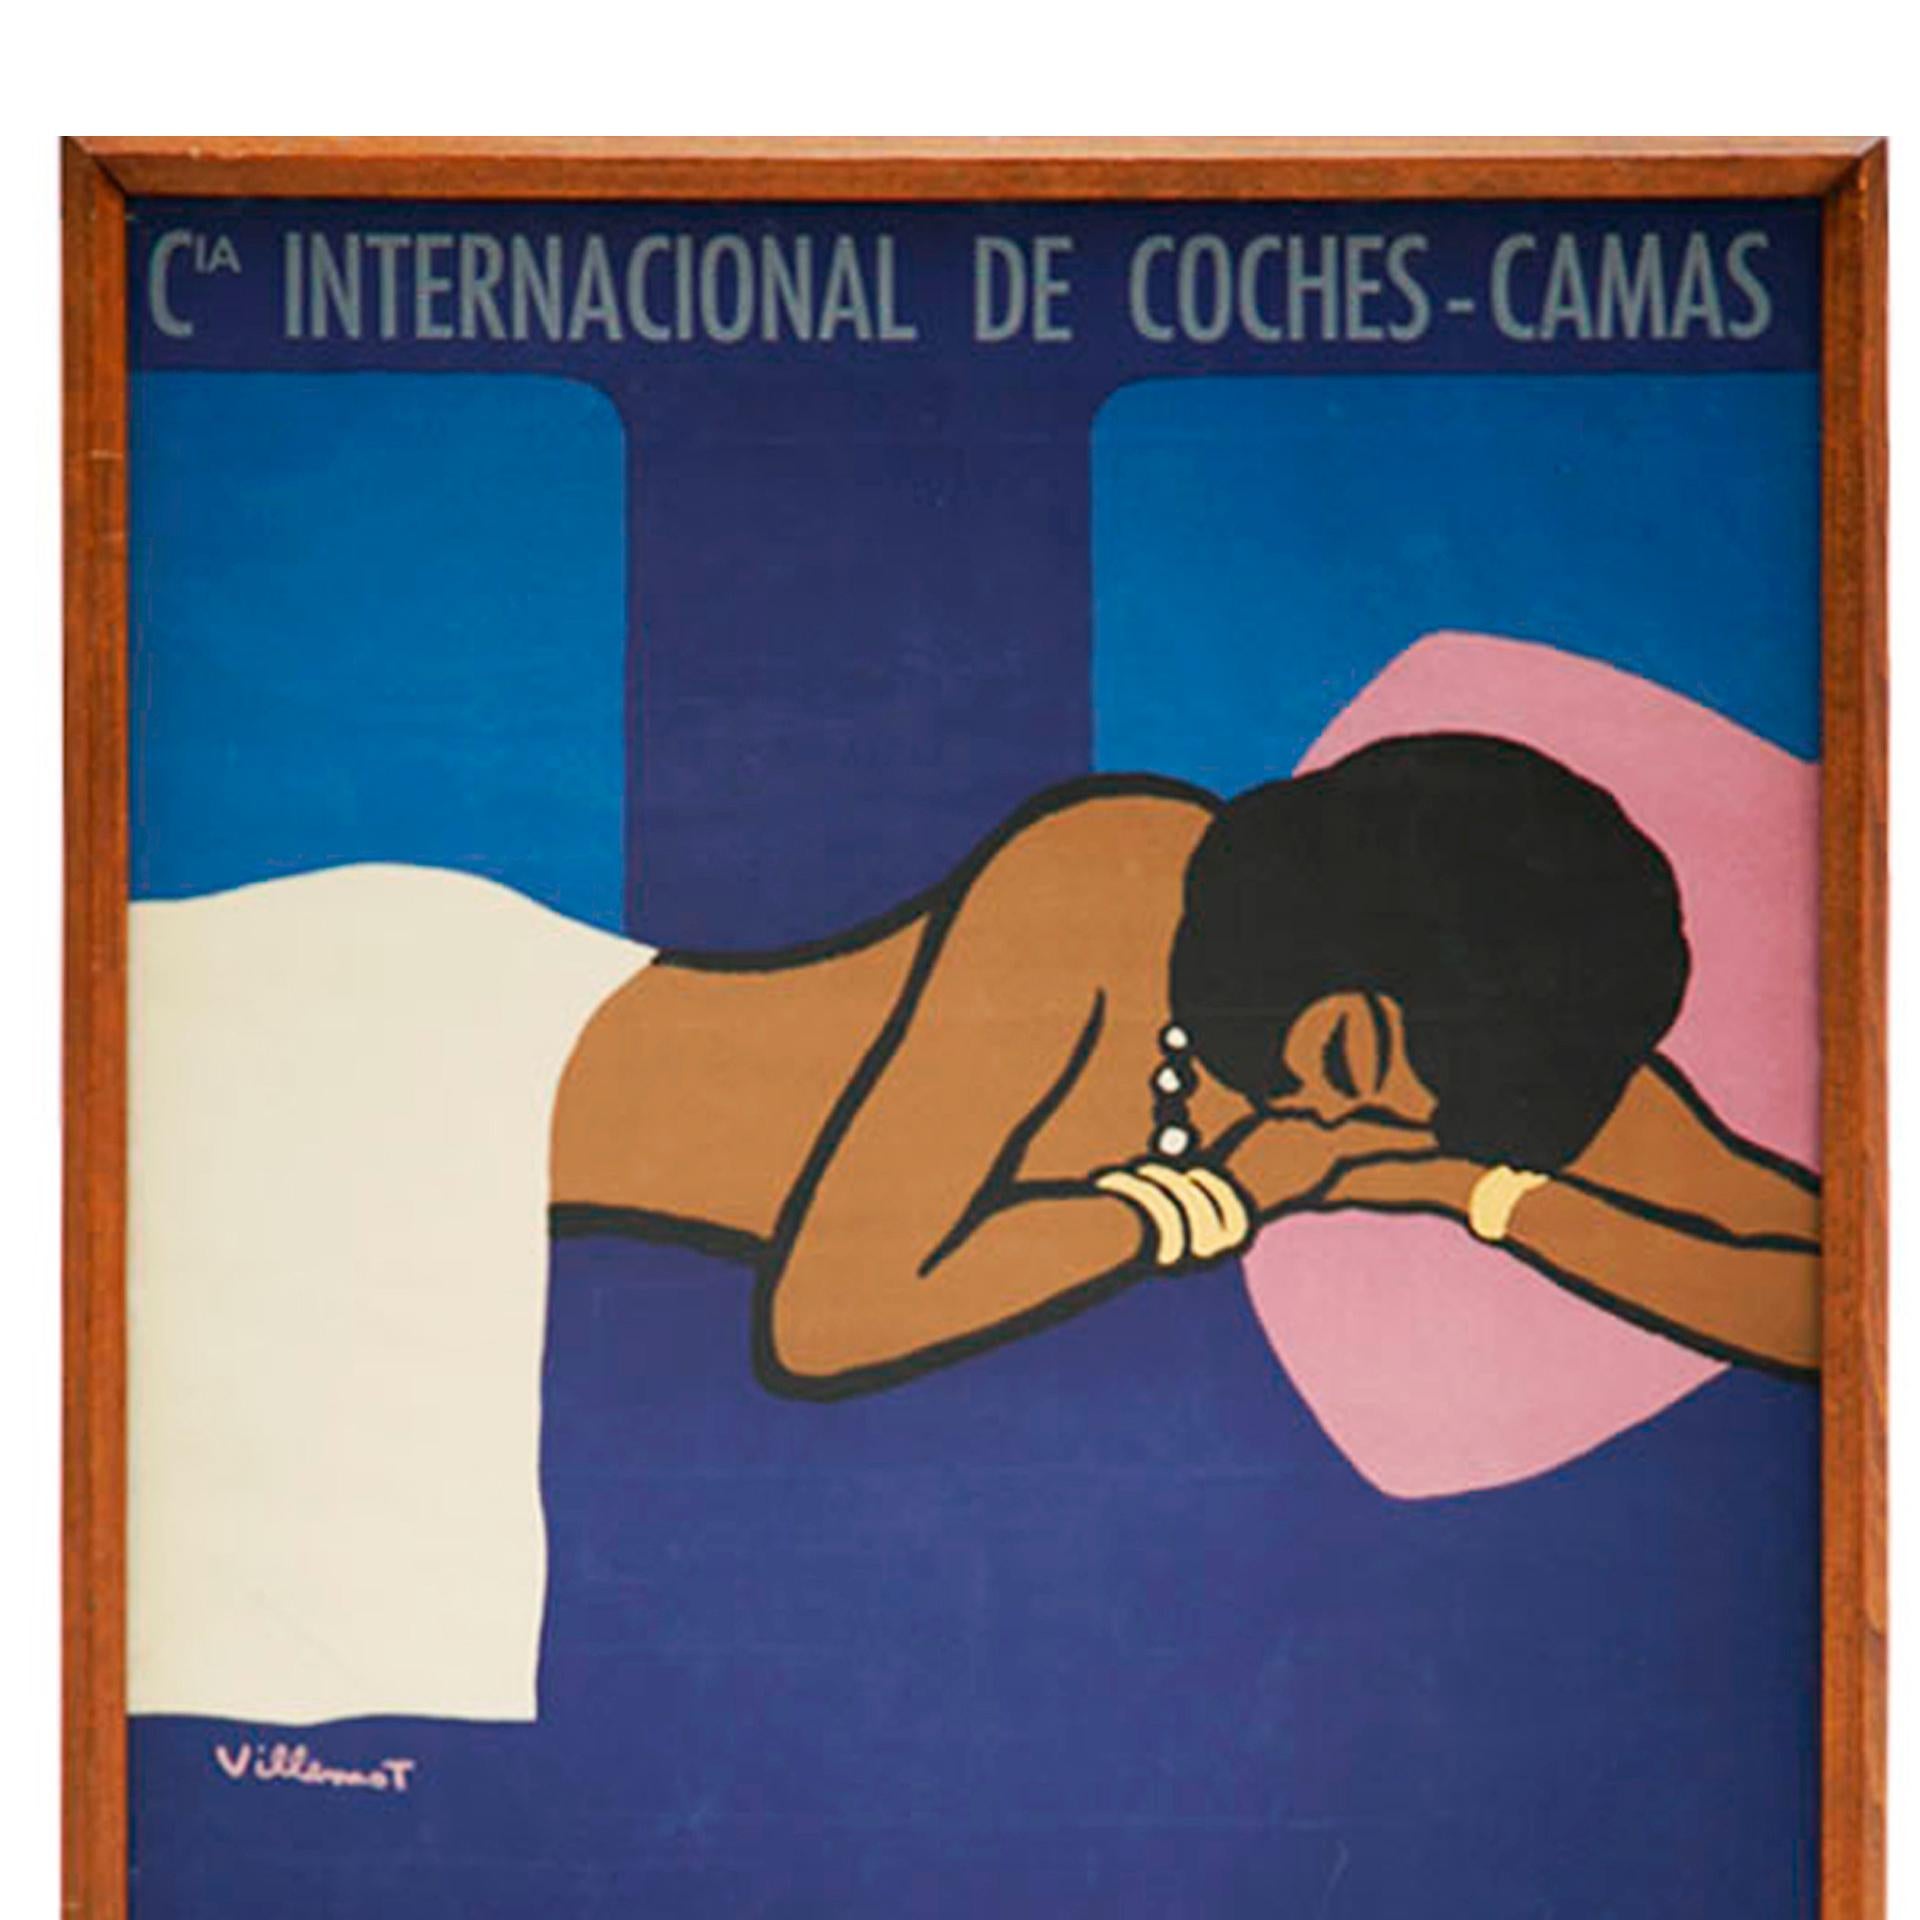 Spanish Bernard Villemot Art Decó Screen Print For Sale